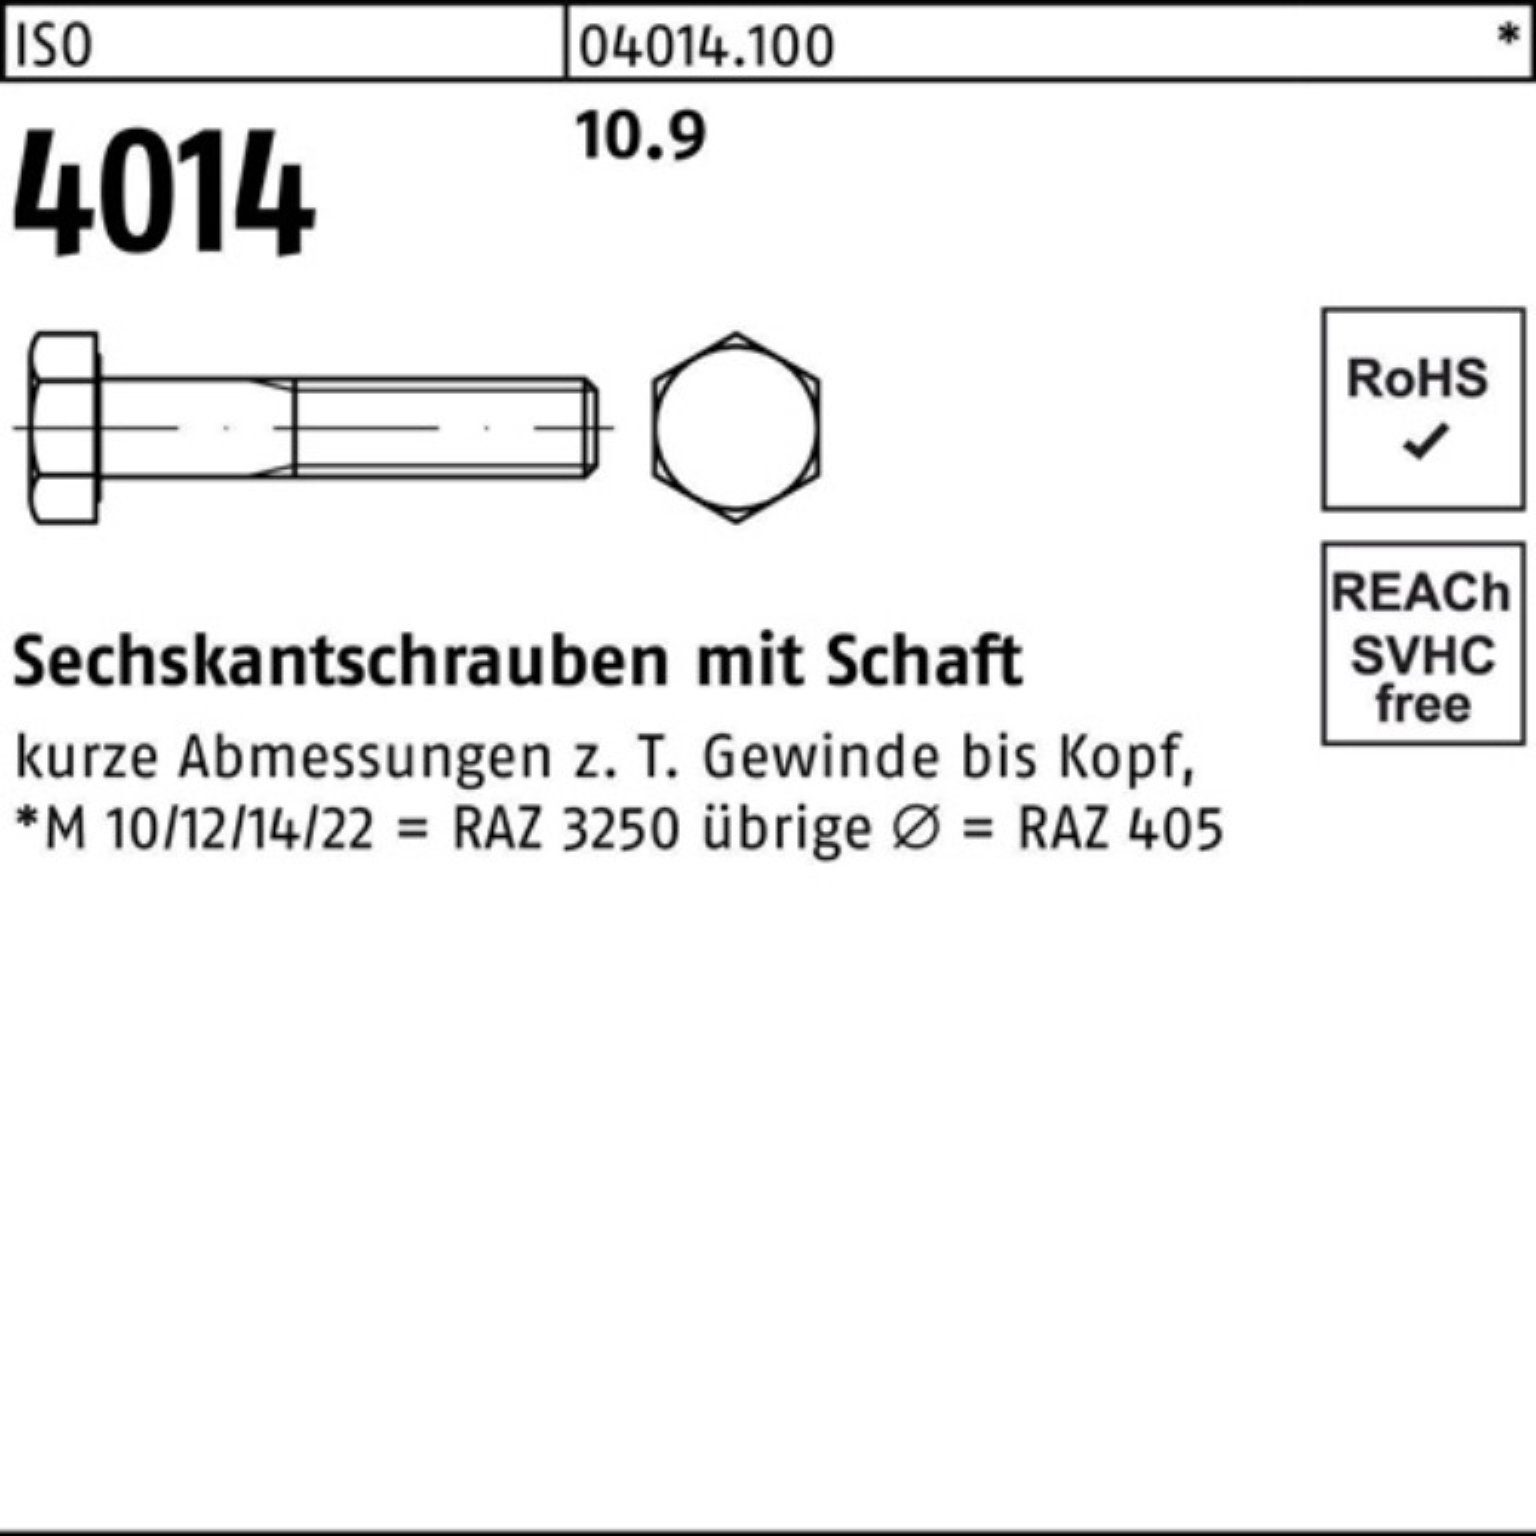 Pack Sechskantschraube 4014 Stück 100er 100 Schaft 55 I M12x ISO Bufab Sechskantschraube 10.9